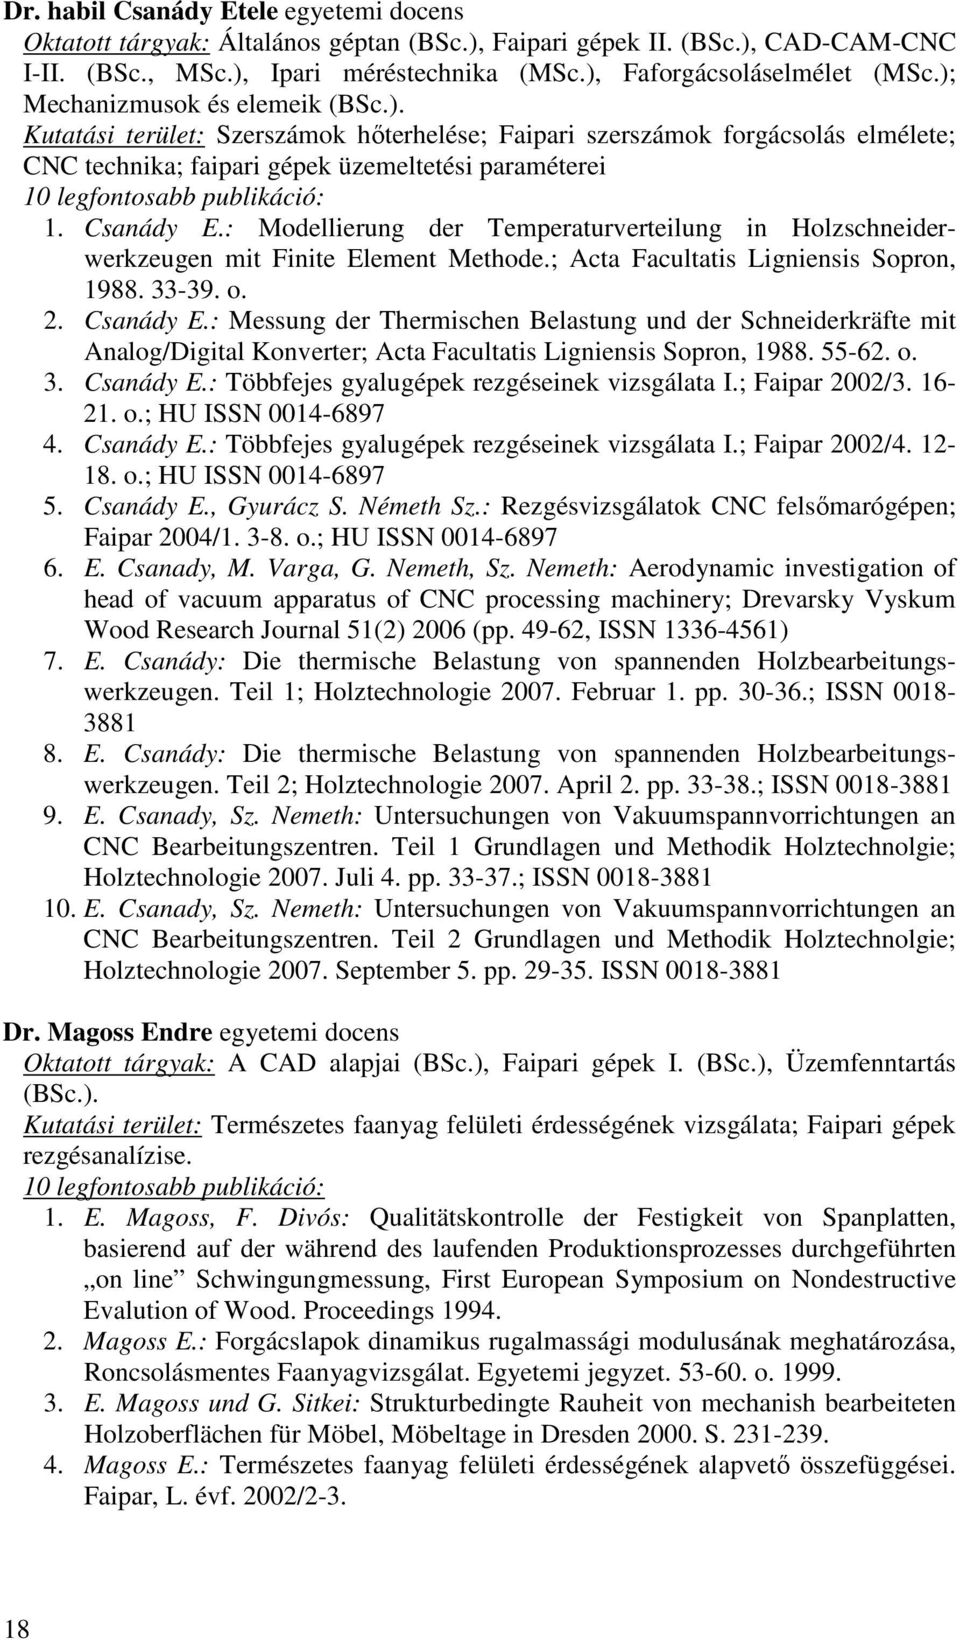 Csanády E.: Modellierung der Temperaturverteilung in Holzschneiderwerkzeugen mit Finite Element Methode.; Acta Facultatis Ligniensis Sopron, 1988. 33-39. o. 2. Csanády E.